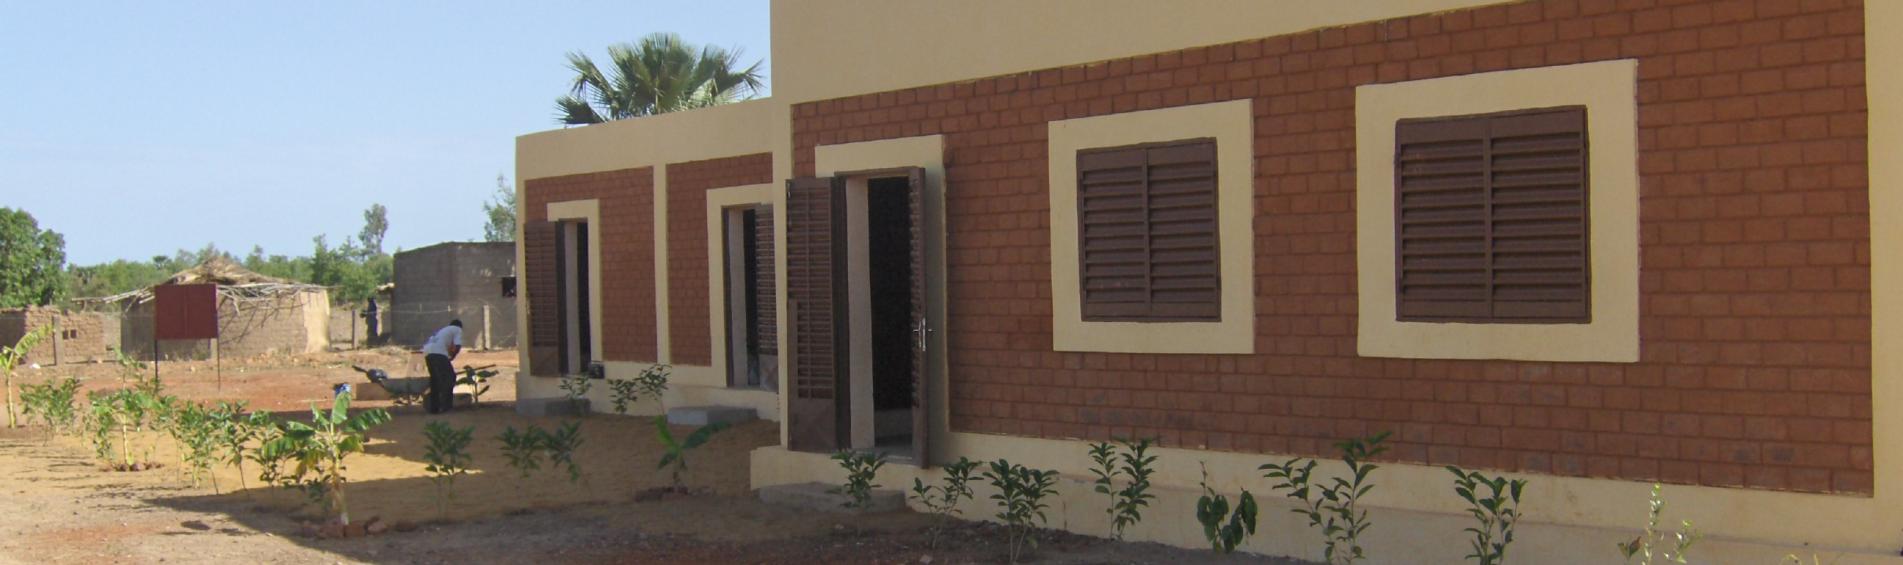 Ecole UVS Mali 2008